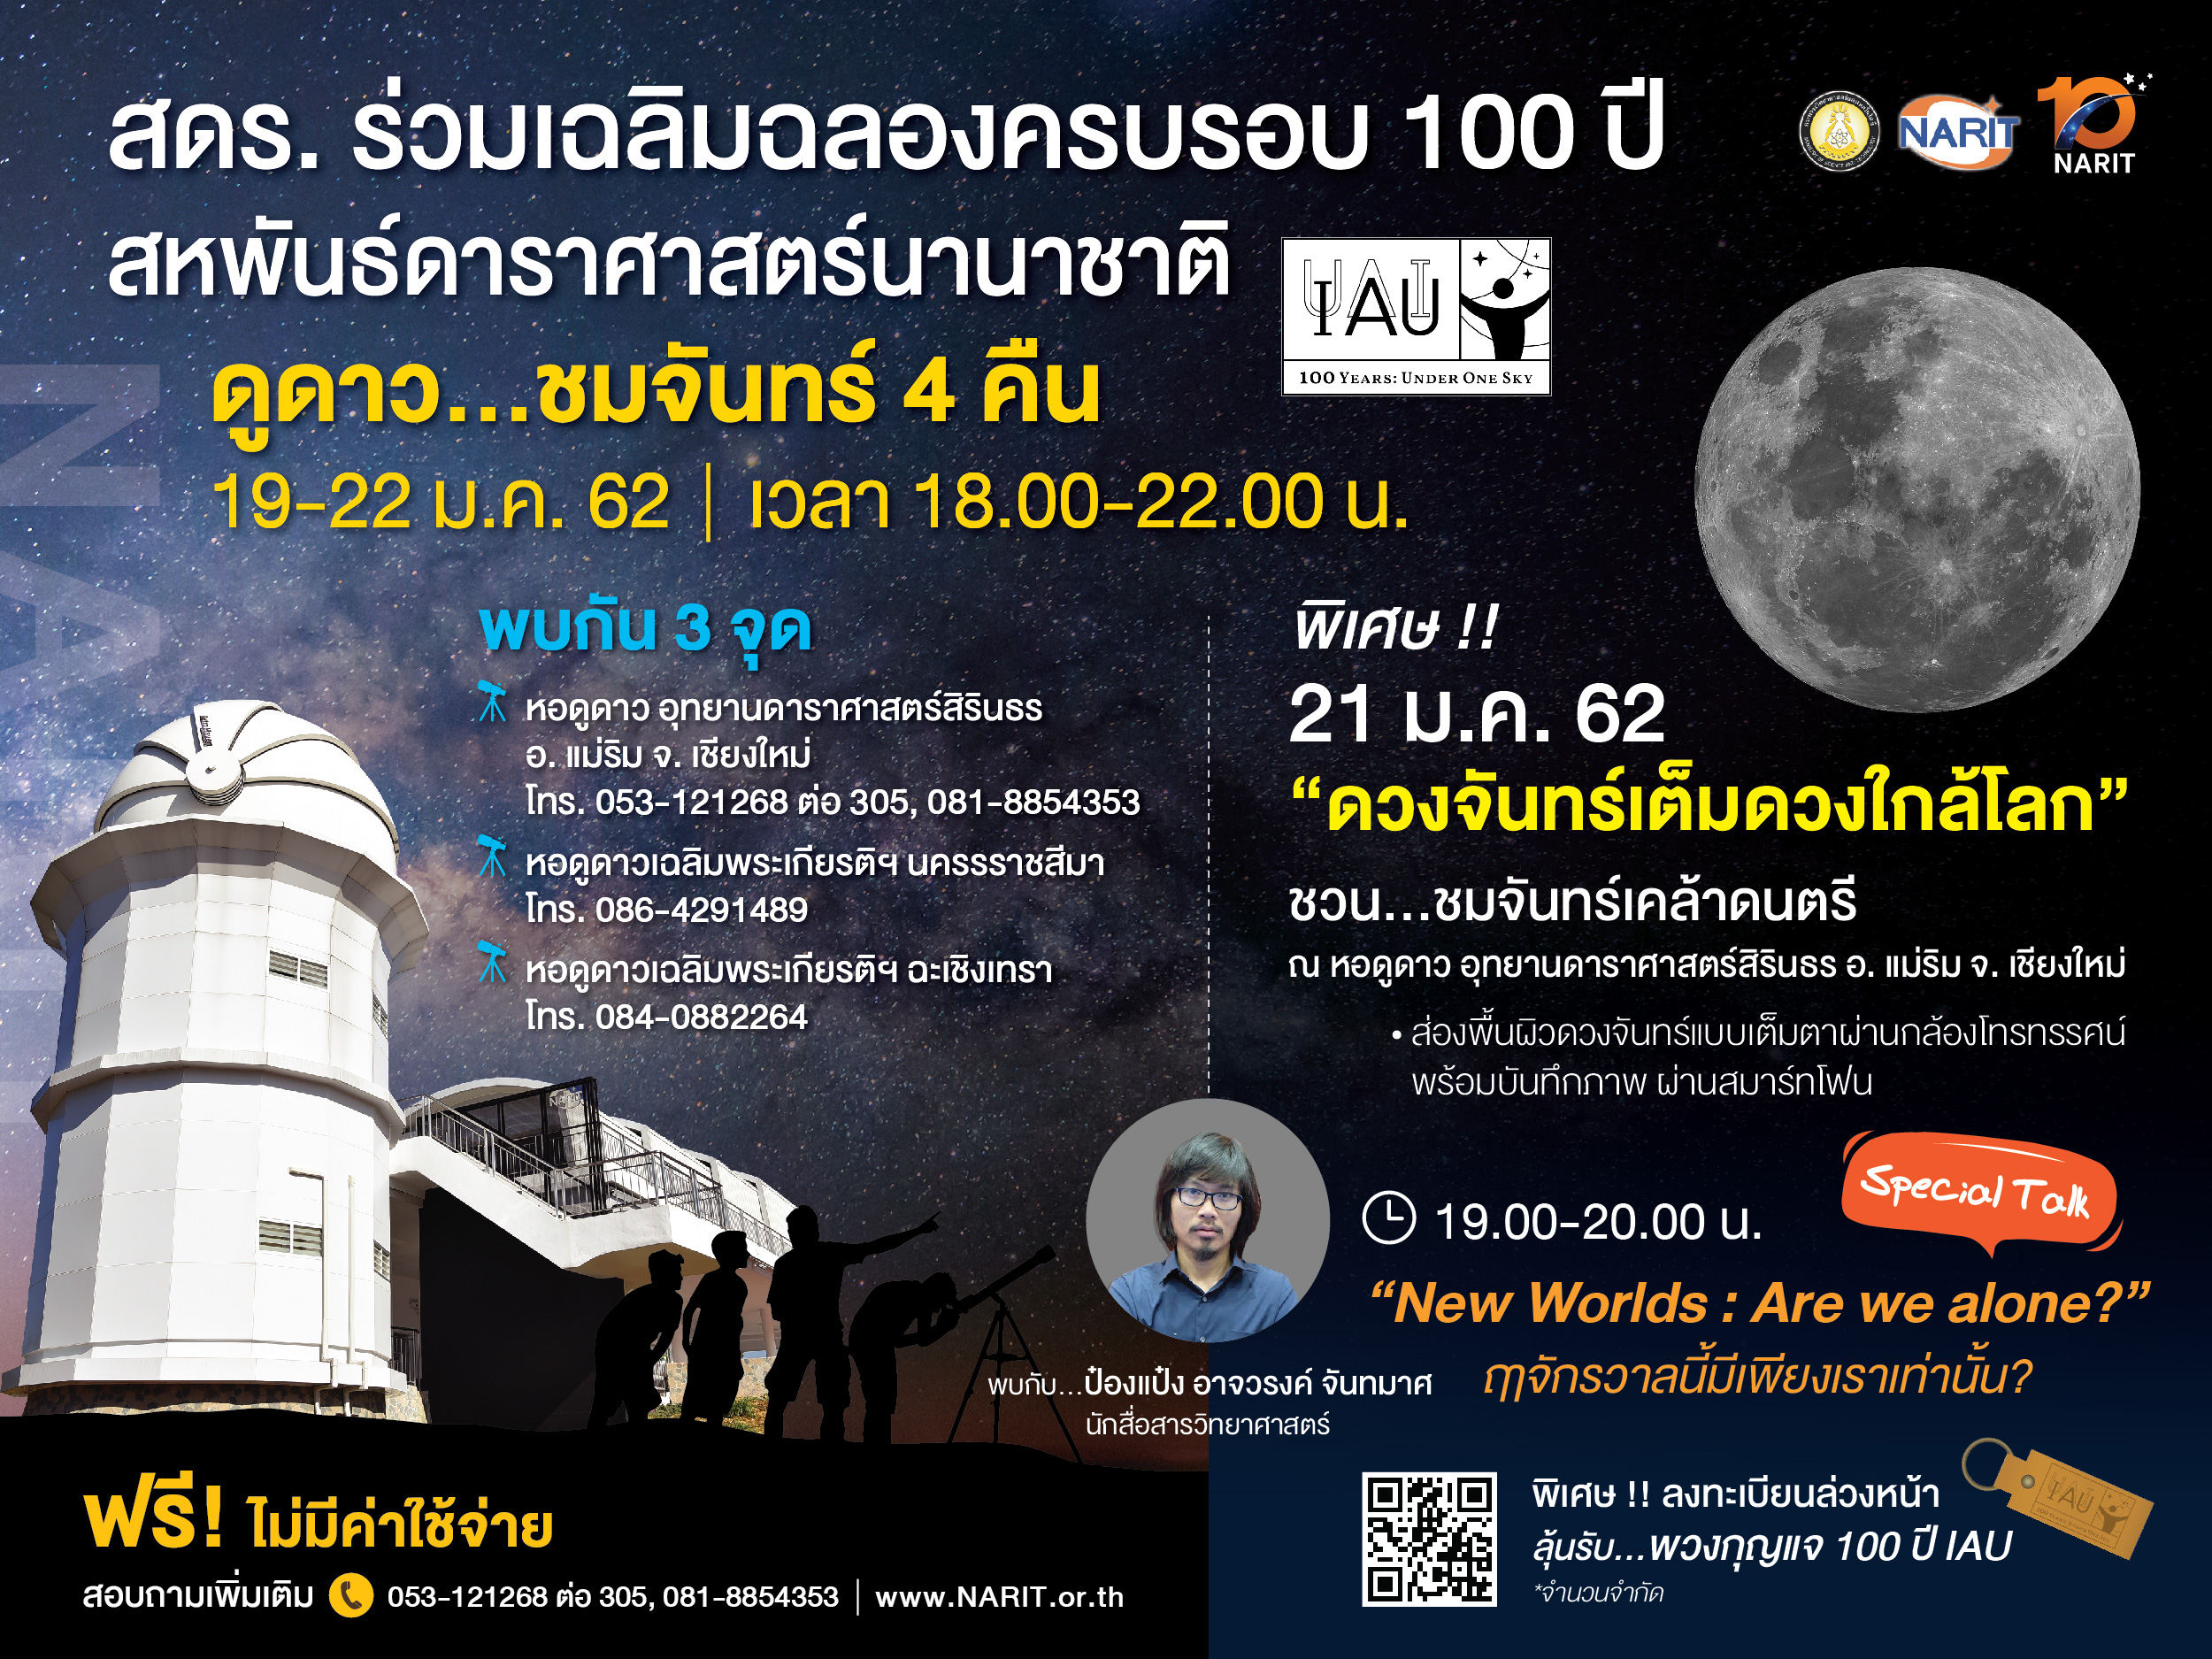 19-22 มกราคมนี้ สดร. จัดดูดาว...ชมจันทร์ 4 คืน ร่วมฉลอง 100 ปี สหพันธ์ดาราศาสตร์นานาชาติ